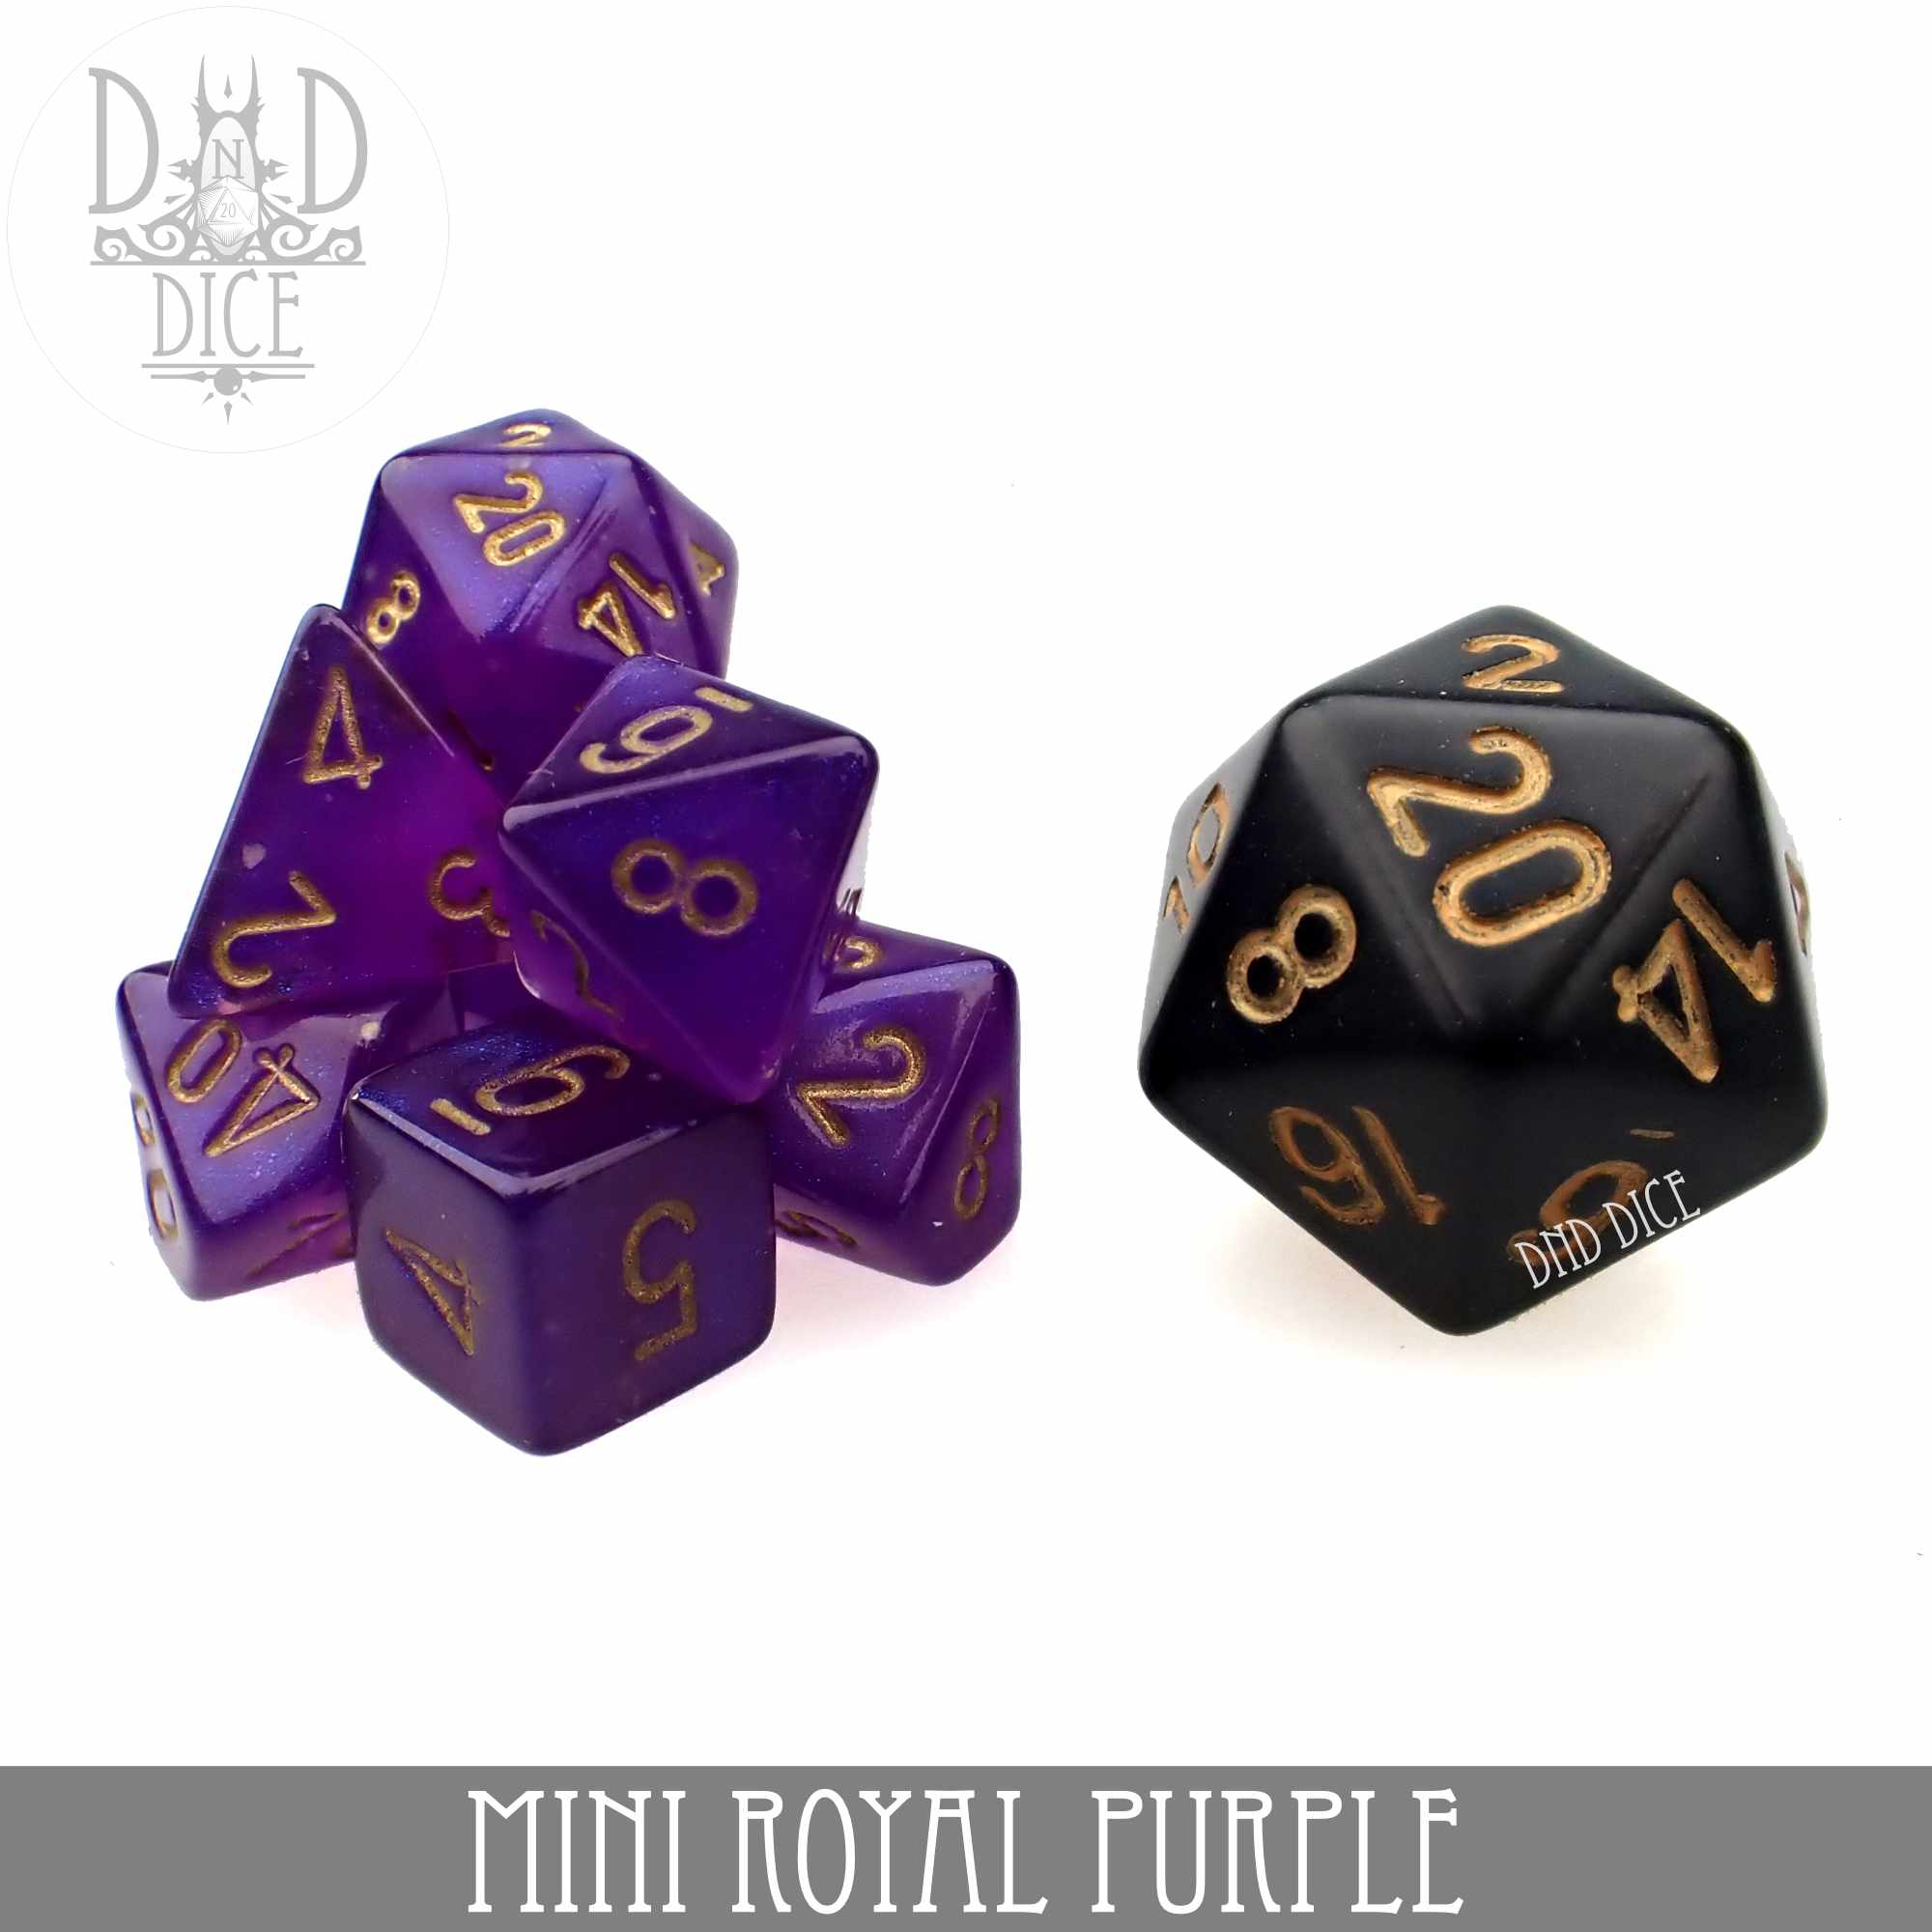 Mini Royal Purple Dice Set (10mm)